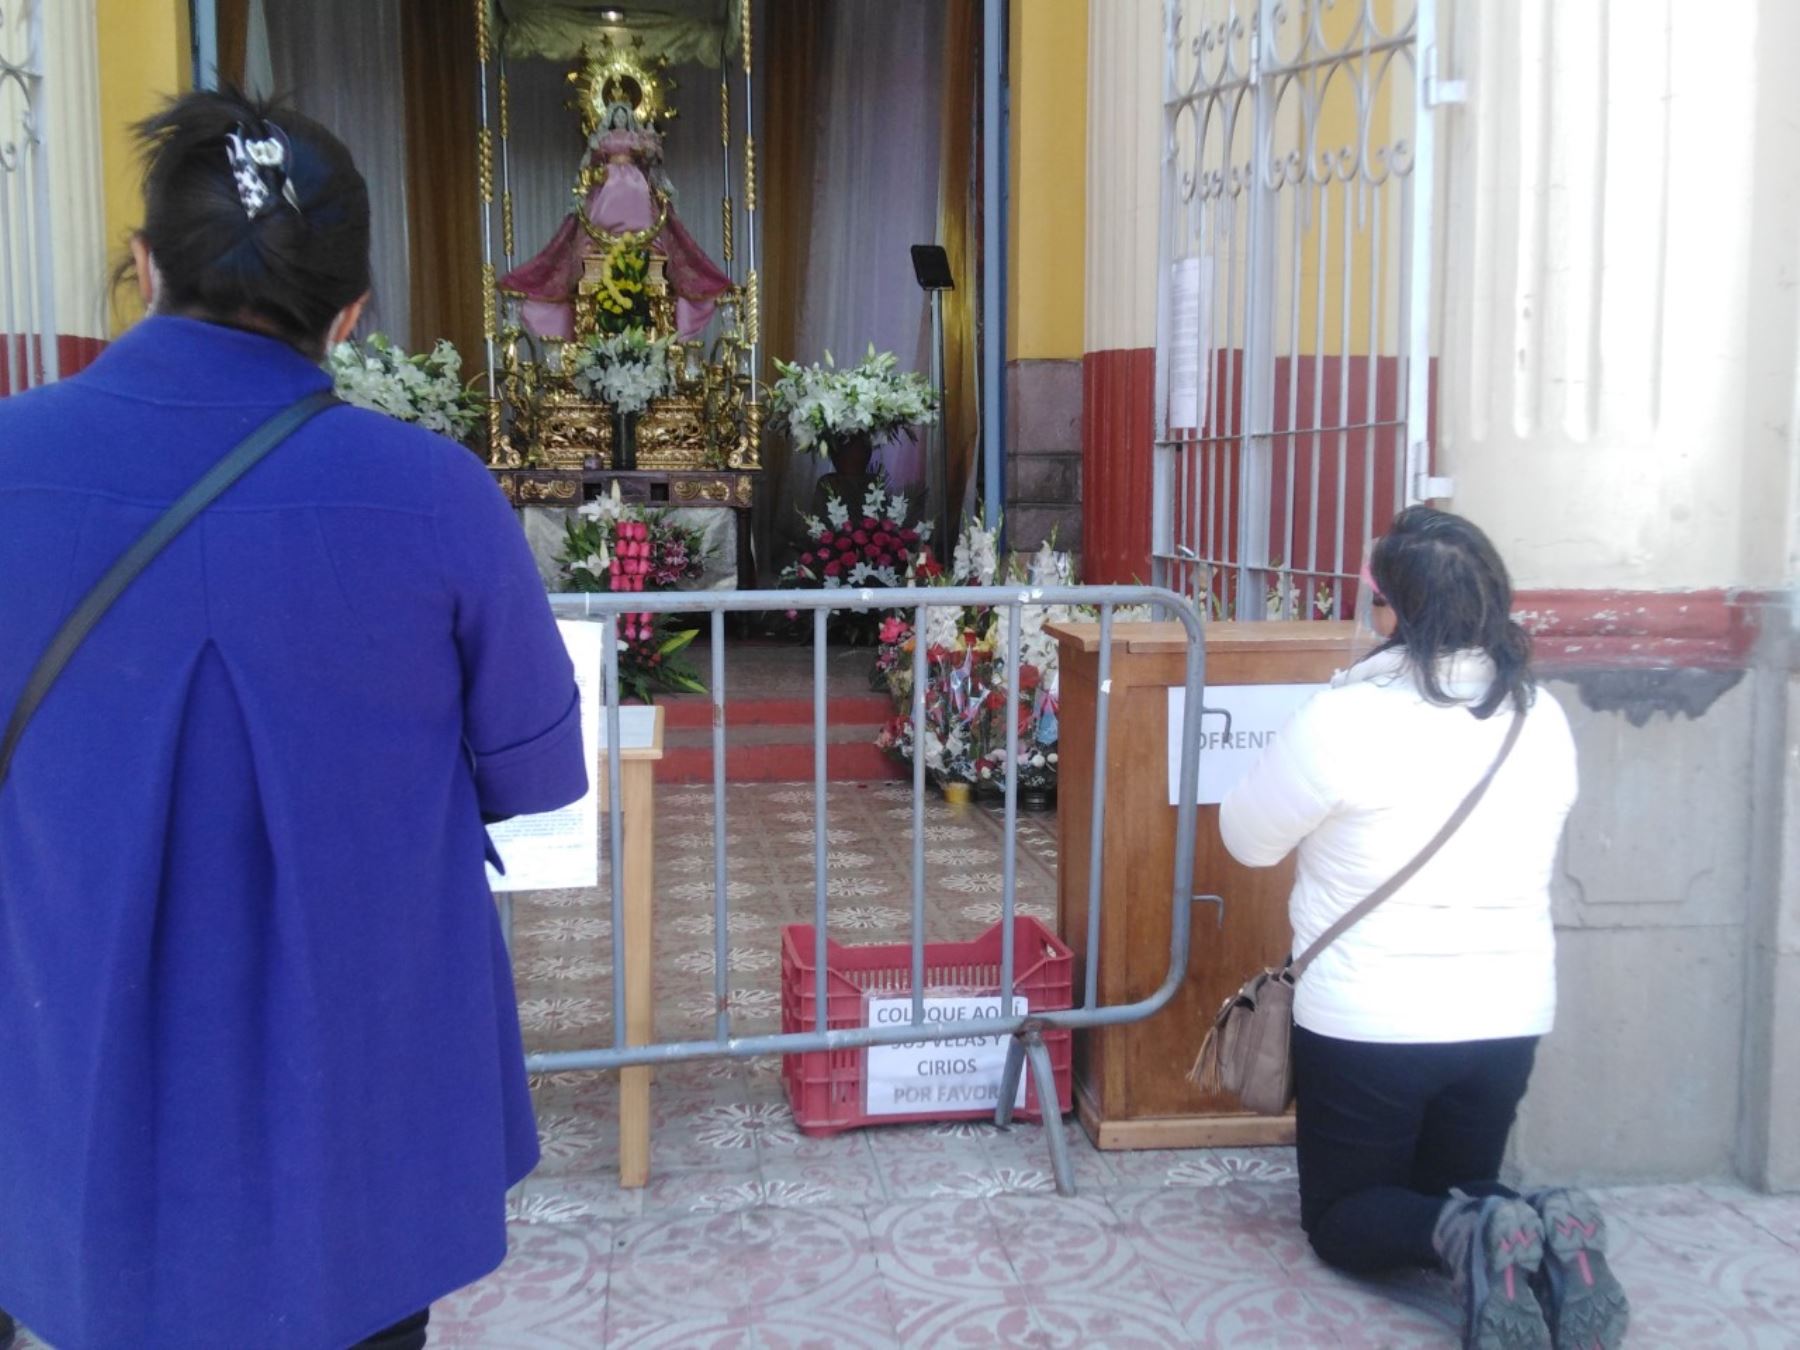 Puneños renuevan su devoción a la Virgen de la Candelaria y concurren a su santuario, a pesar de las restricciones sanitarias decretadas por la pandemia del coronavirus covid-19.